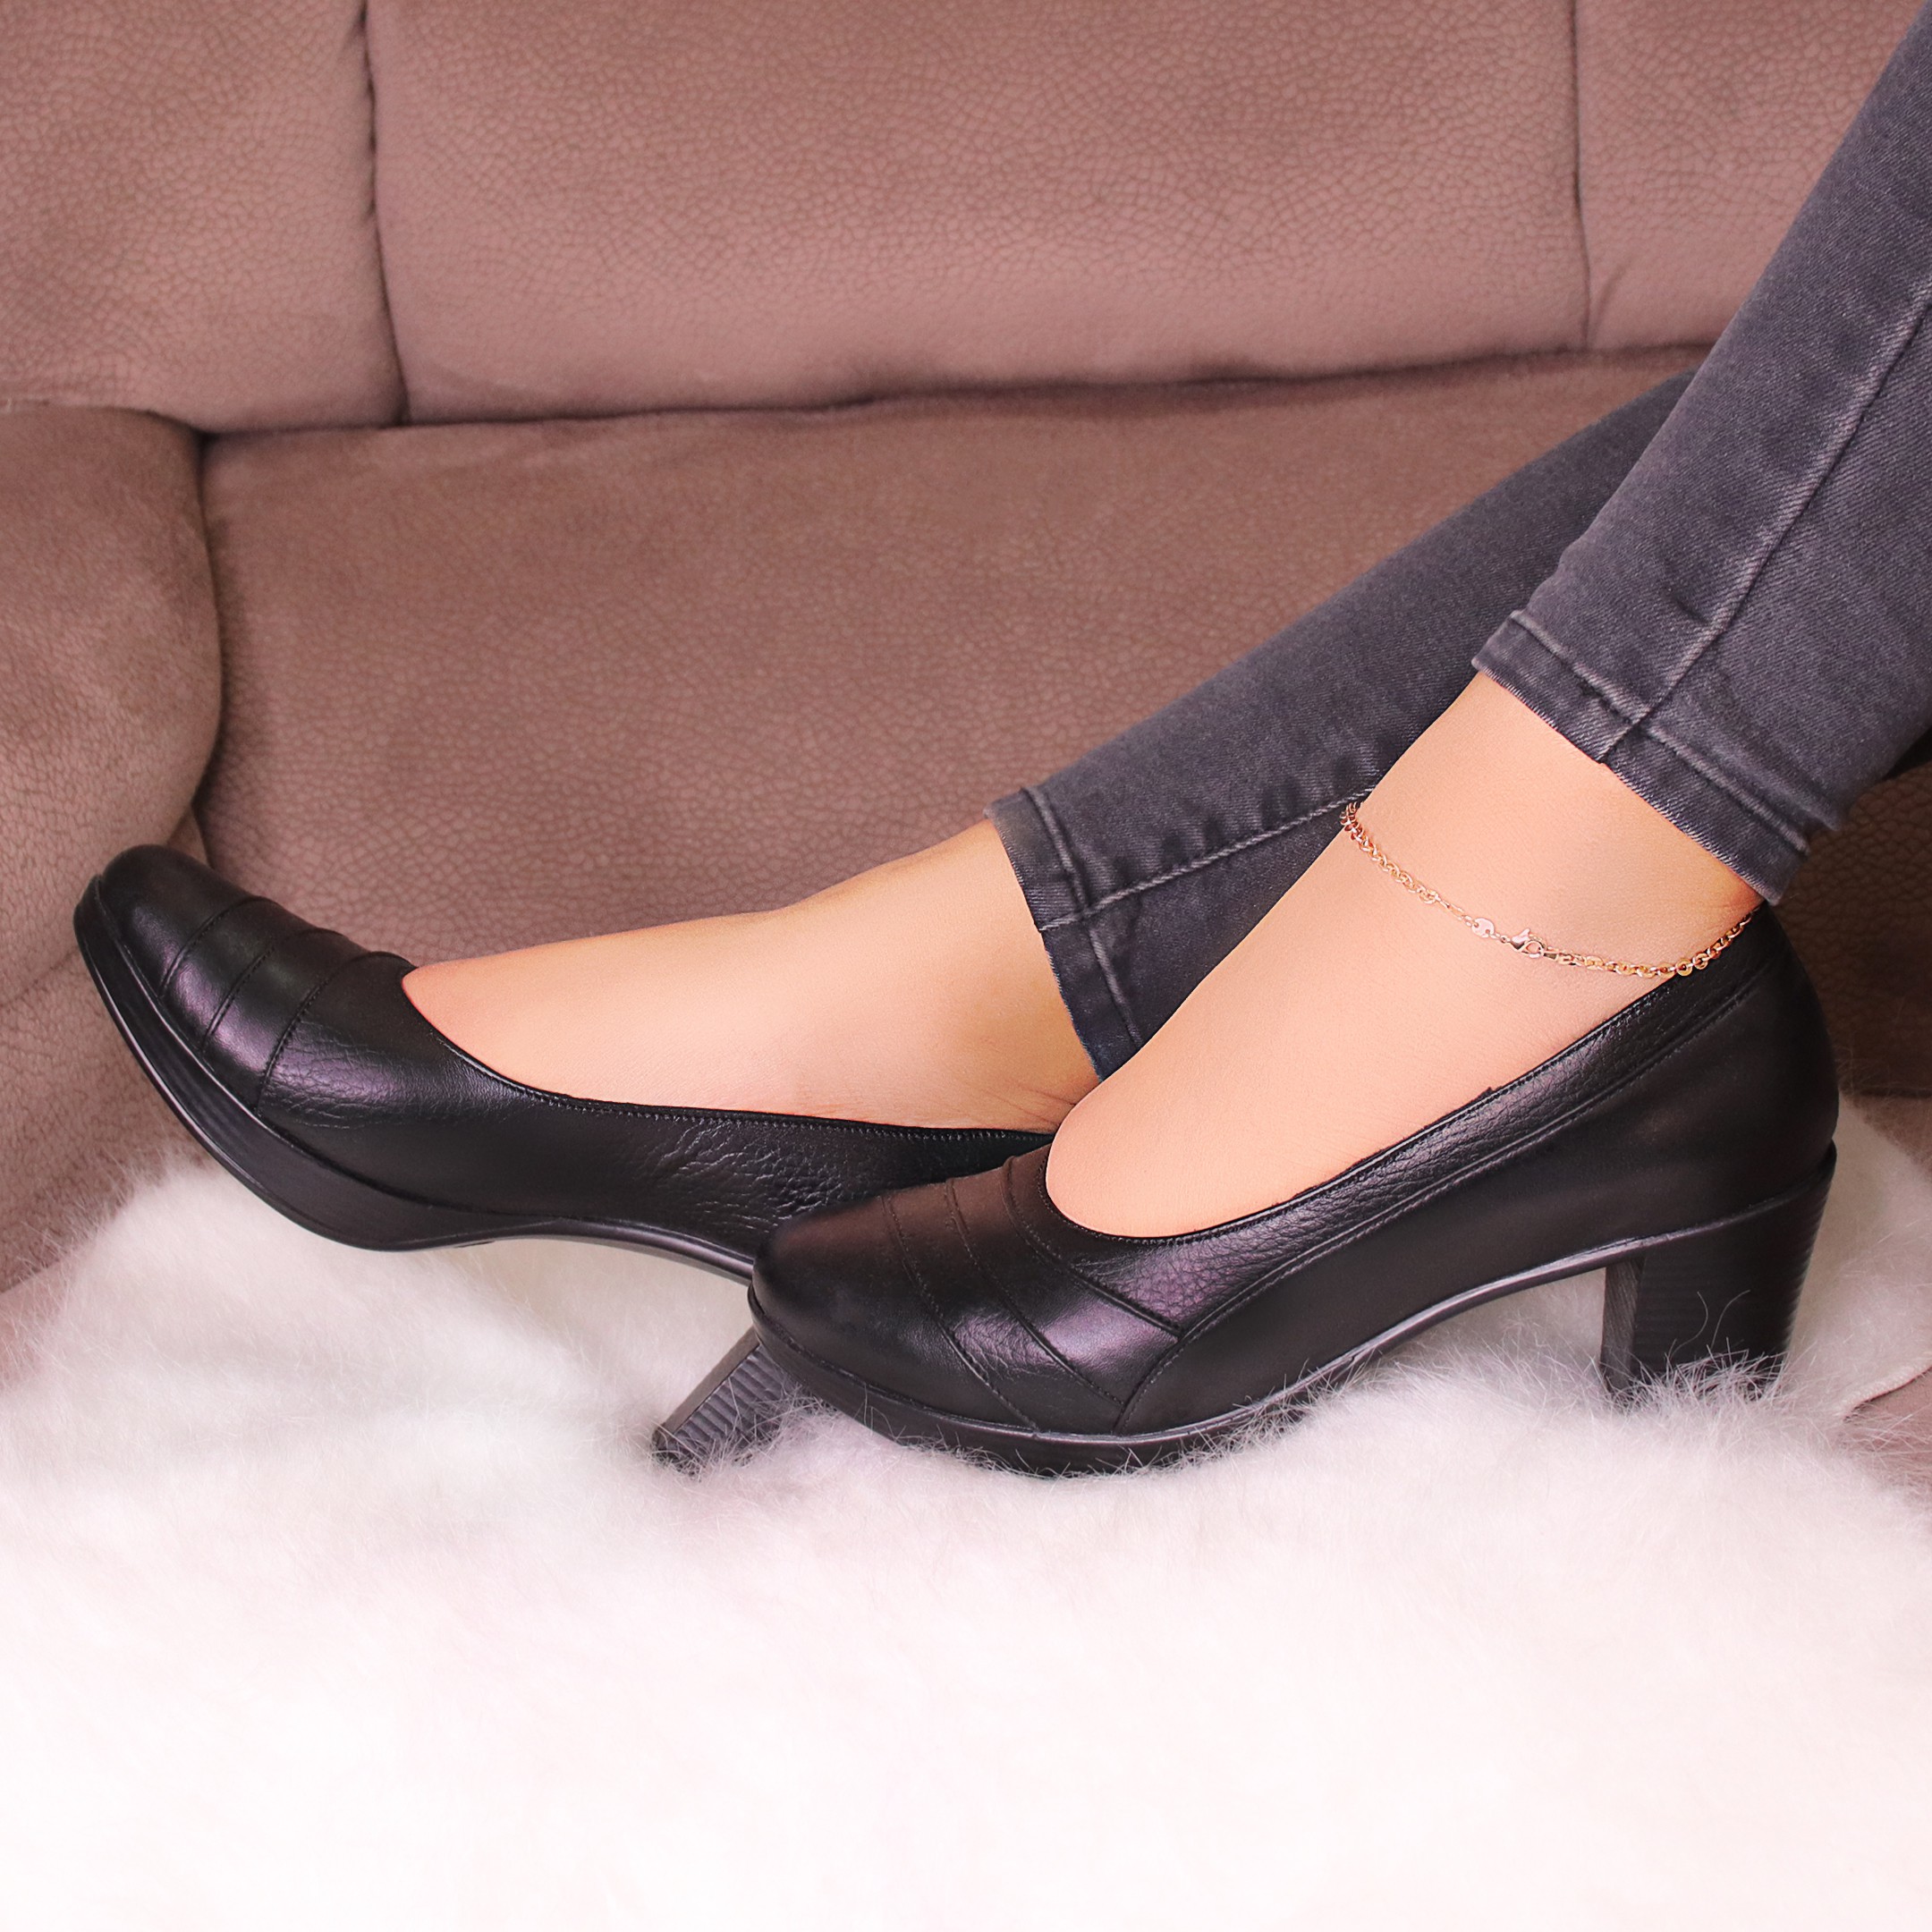 خرید آنلاین کفش پاشنه بلند چرم زنانه روشن مدل 01-7050